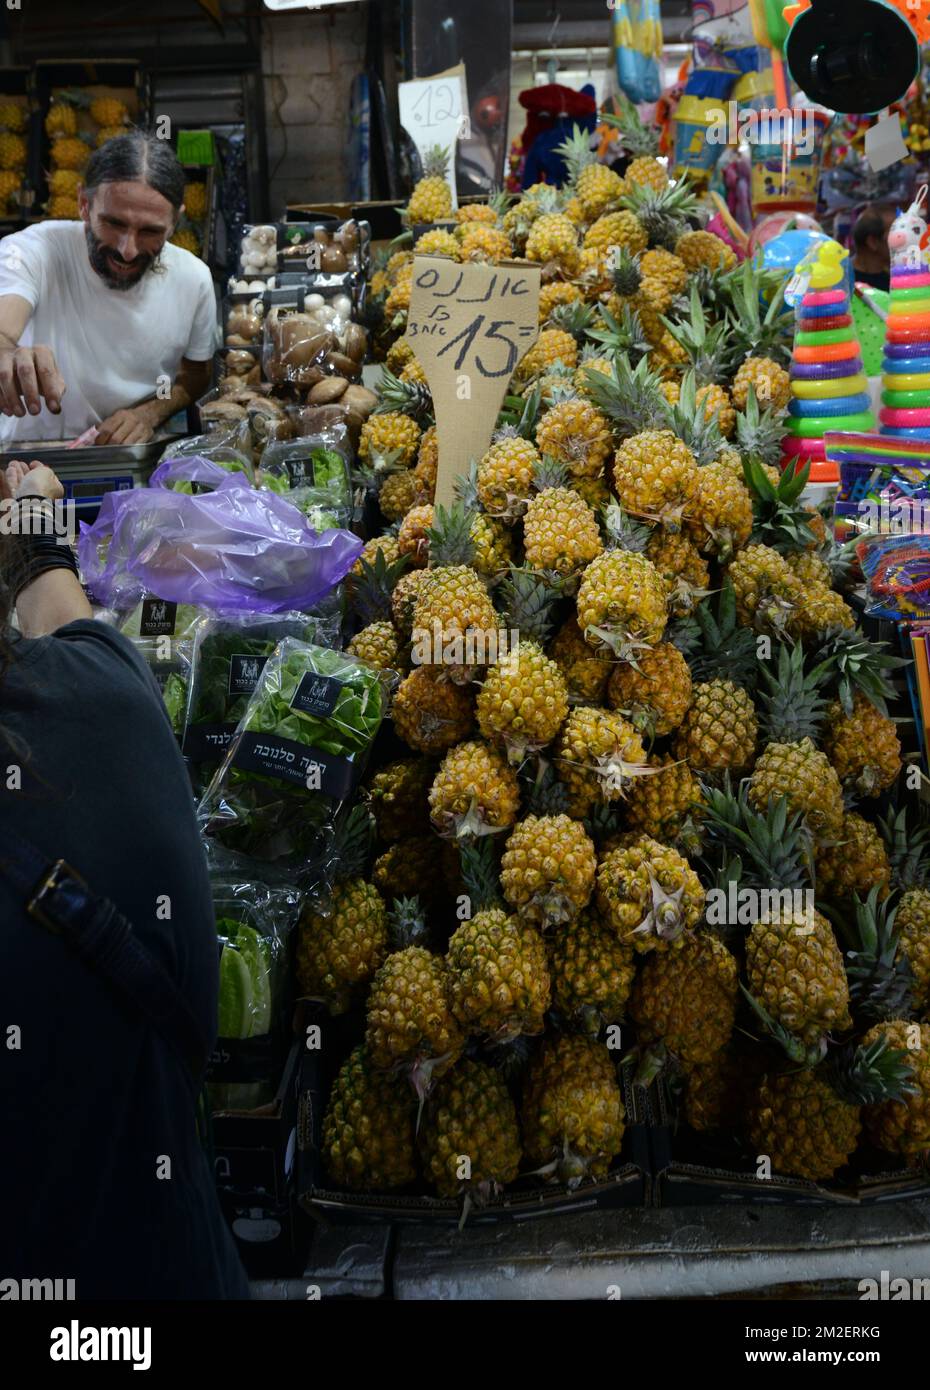 Gli ananassi israeliani sono venduti al colorato mercato Carmelo di Tel-Aviv, Israele. Foto Stock